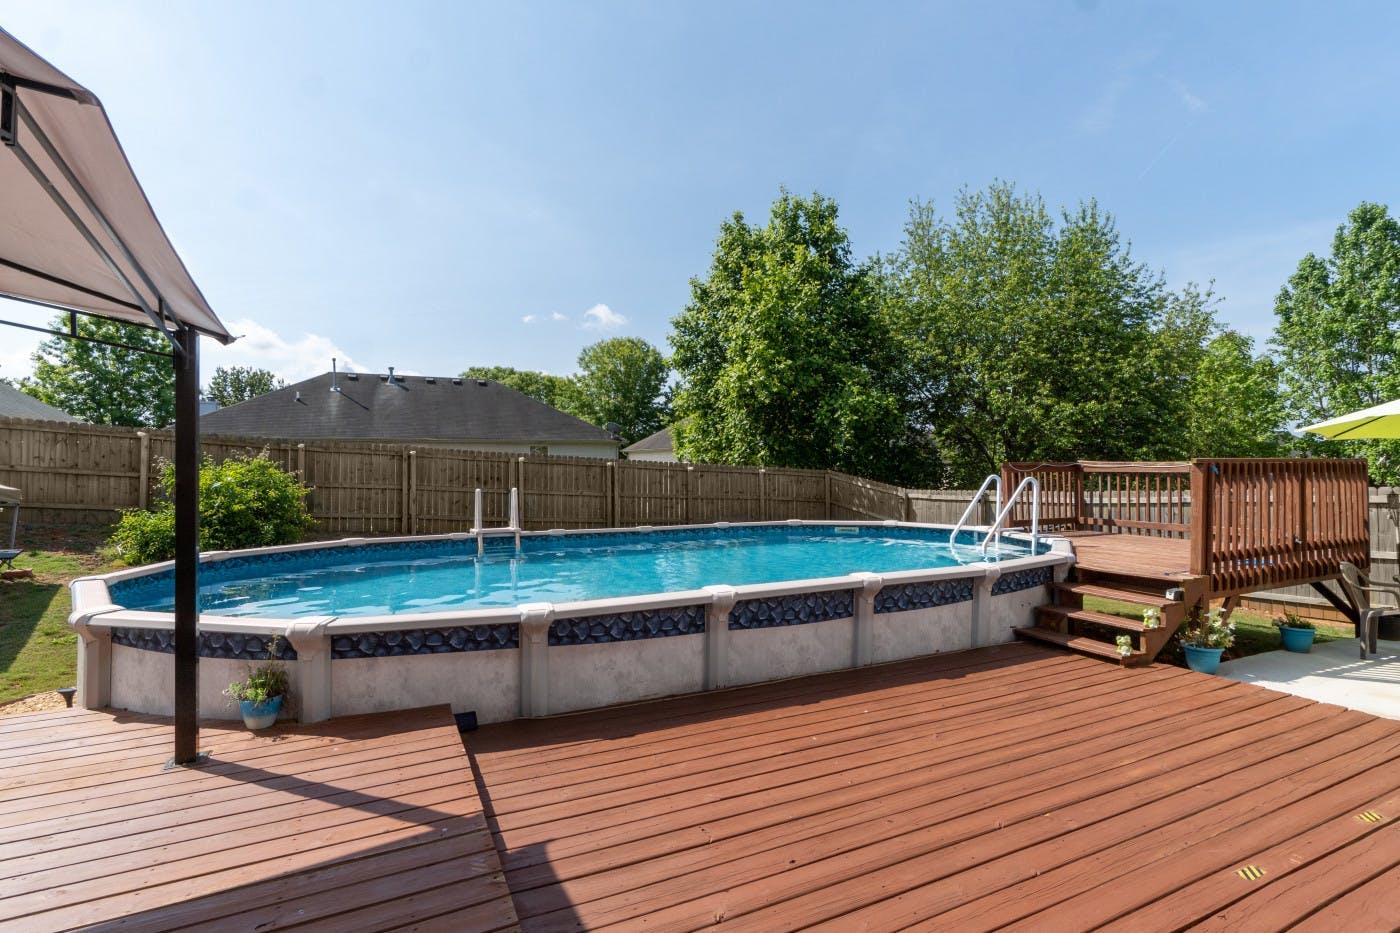 Good Vibes Backyard, Pool & Deck